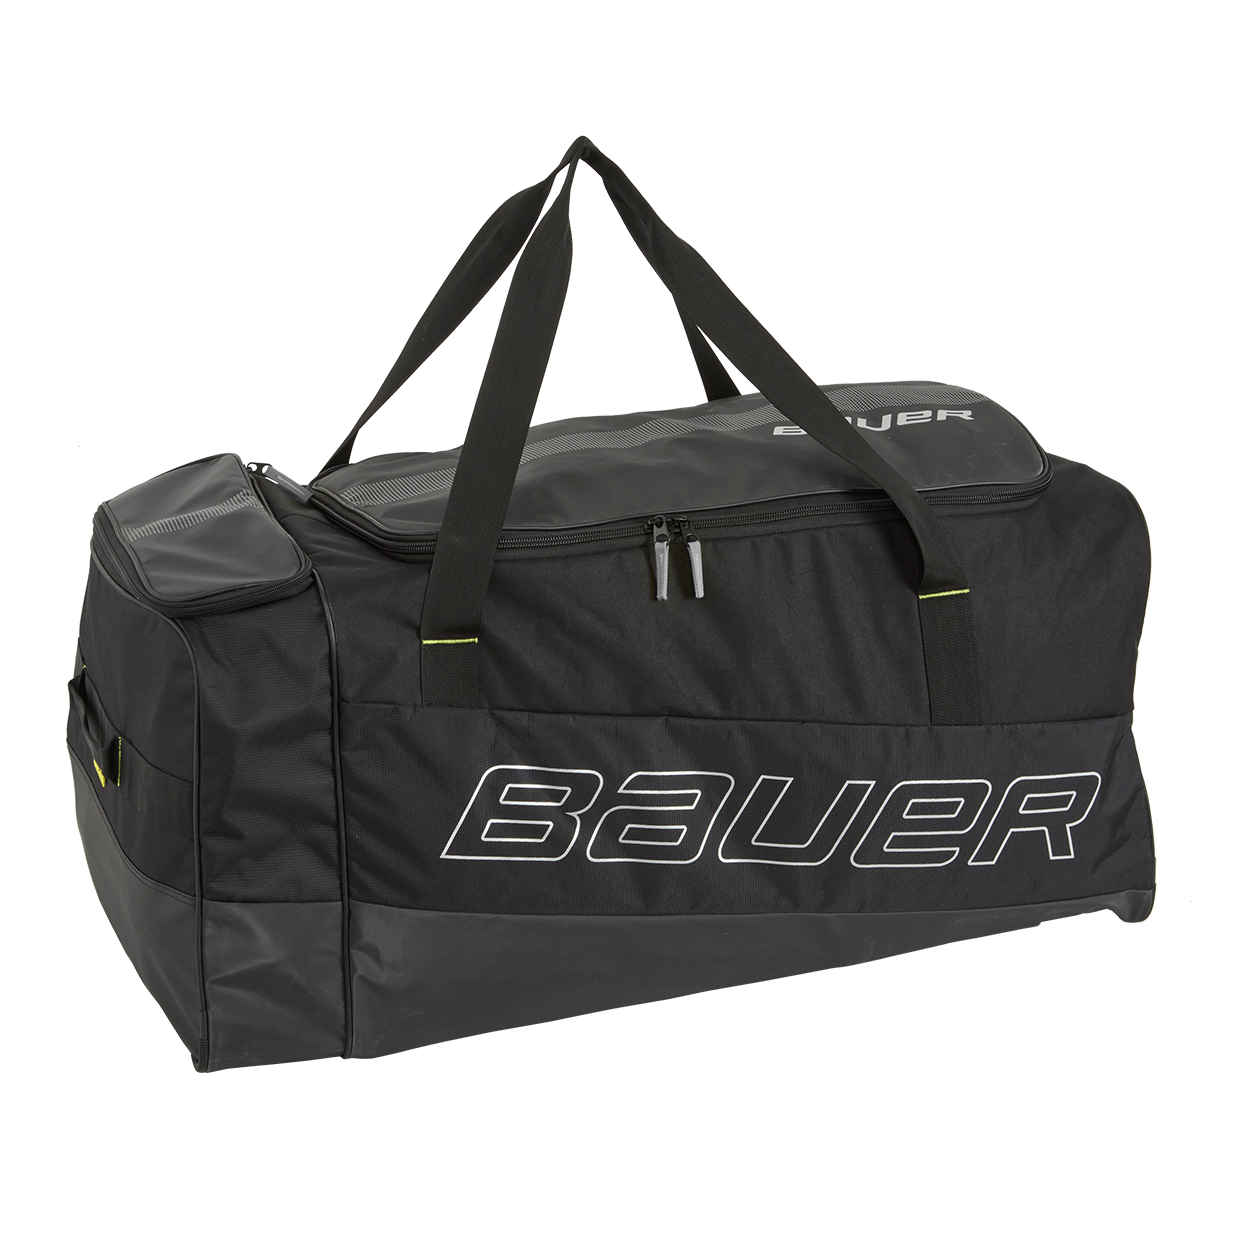 Athletico Hockey Duffle Bag  Large Ice Hockey Duffel Travel Bag for  Equipment  Gear with Included Organizer Caddy Back  Walmartcom